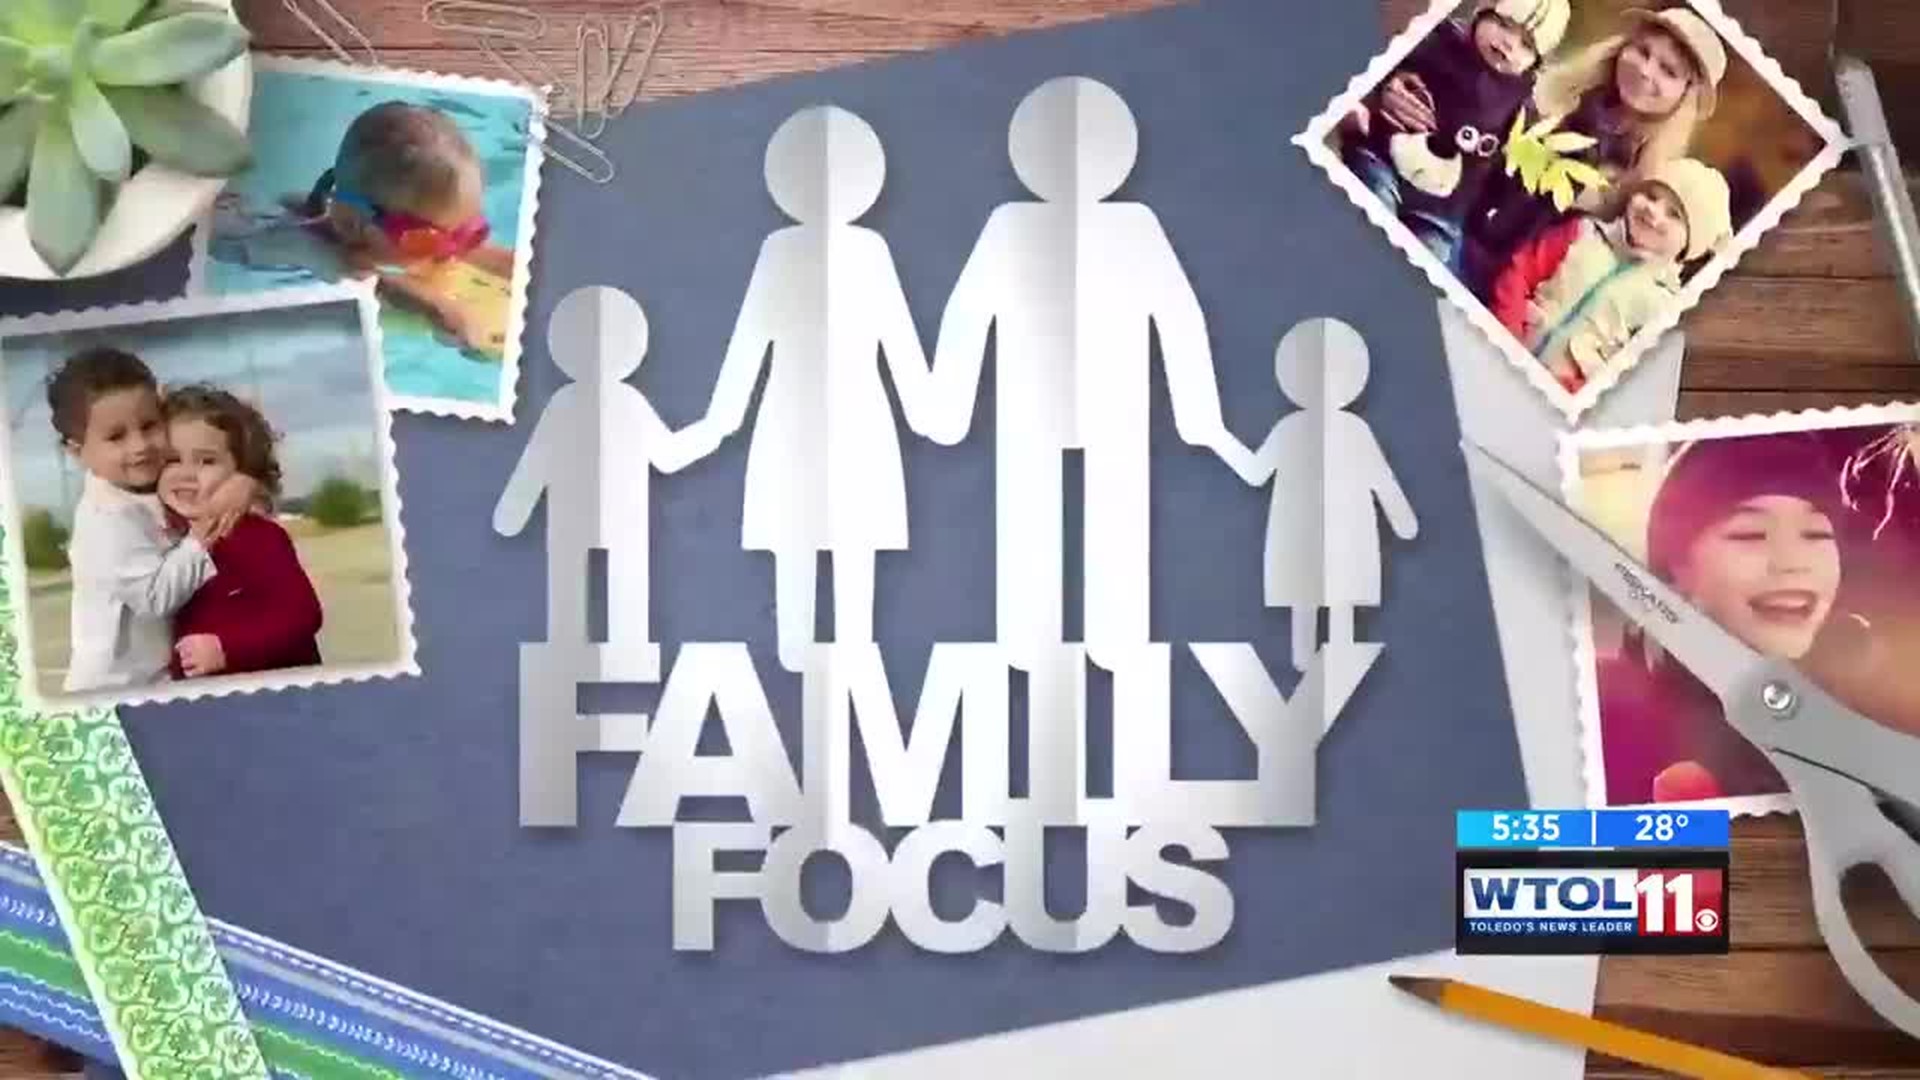 Family focus: Co-parenting